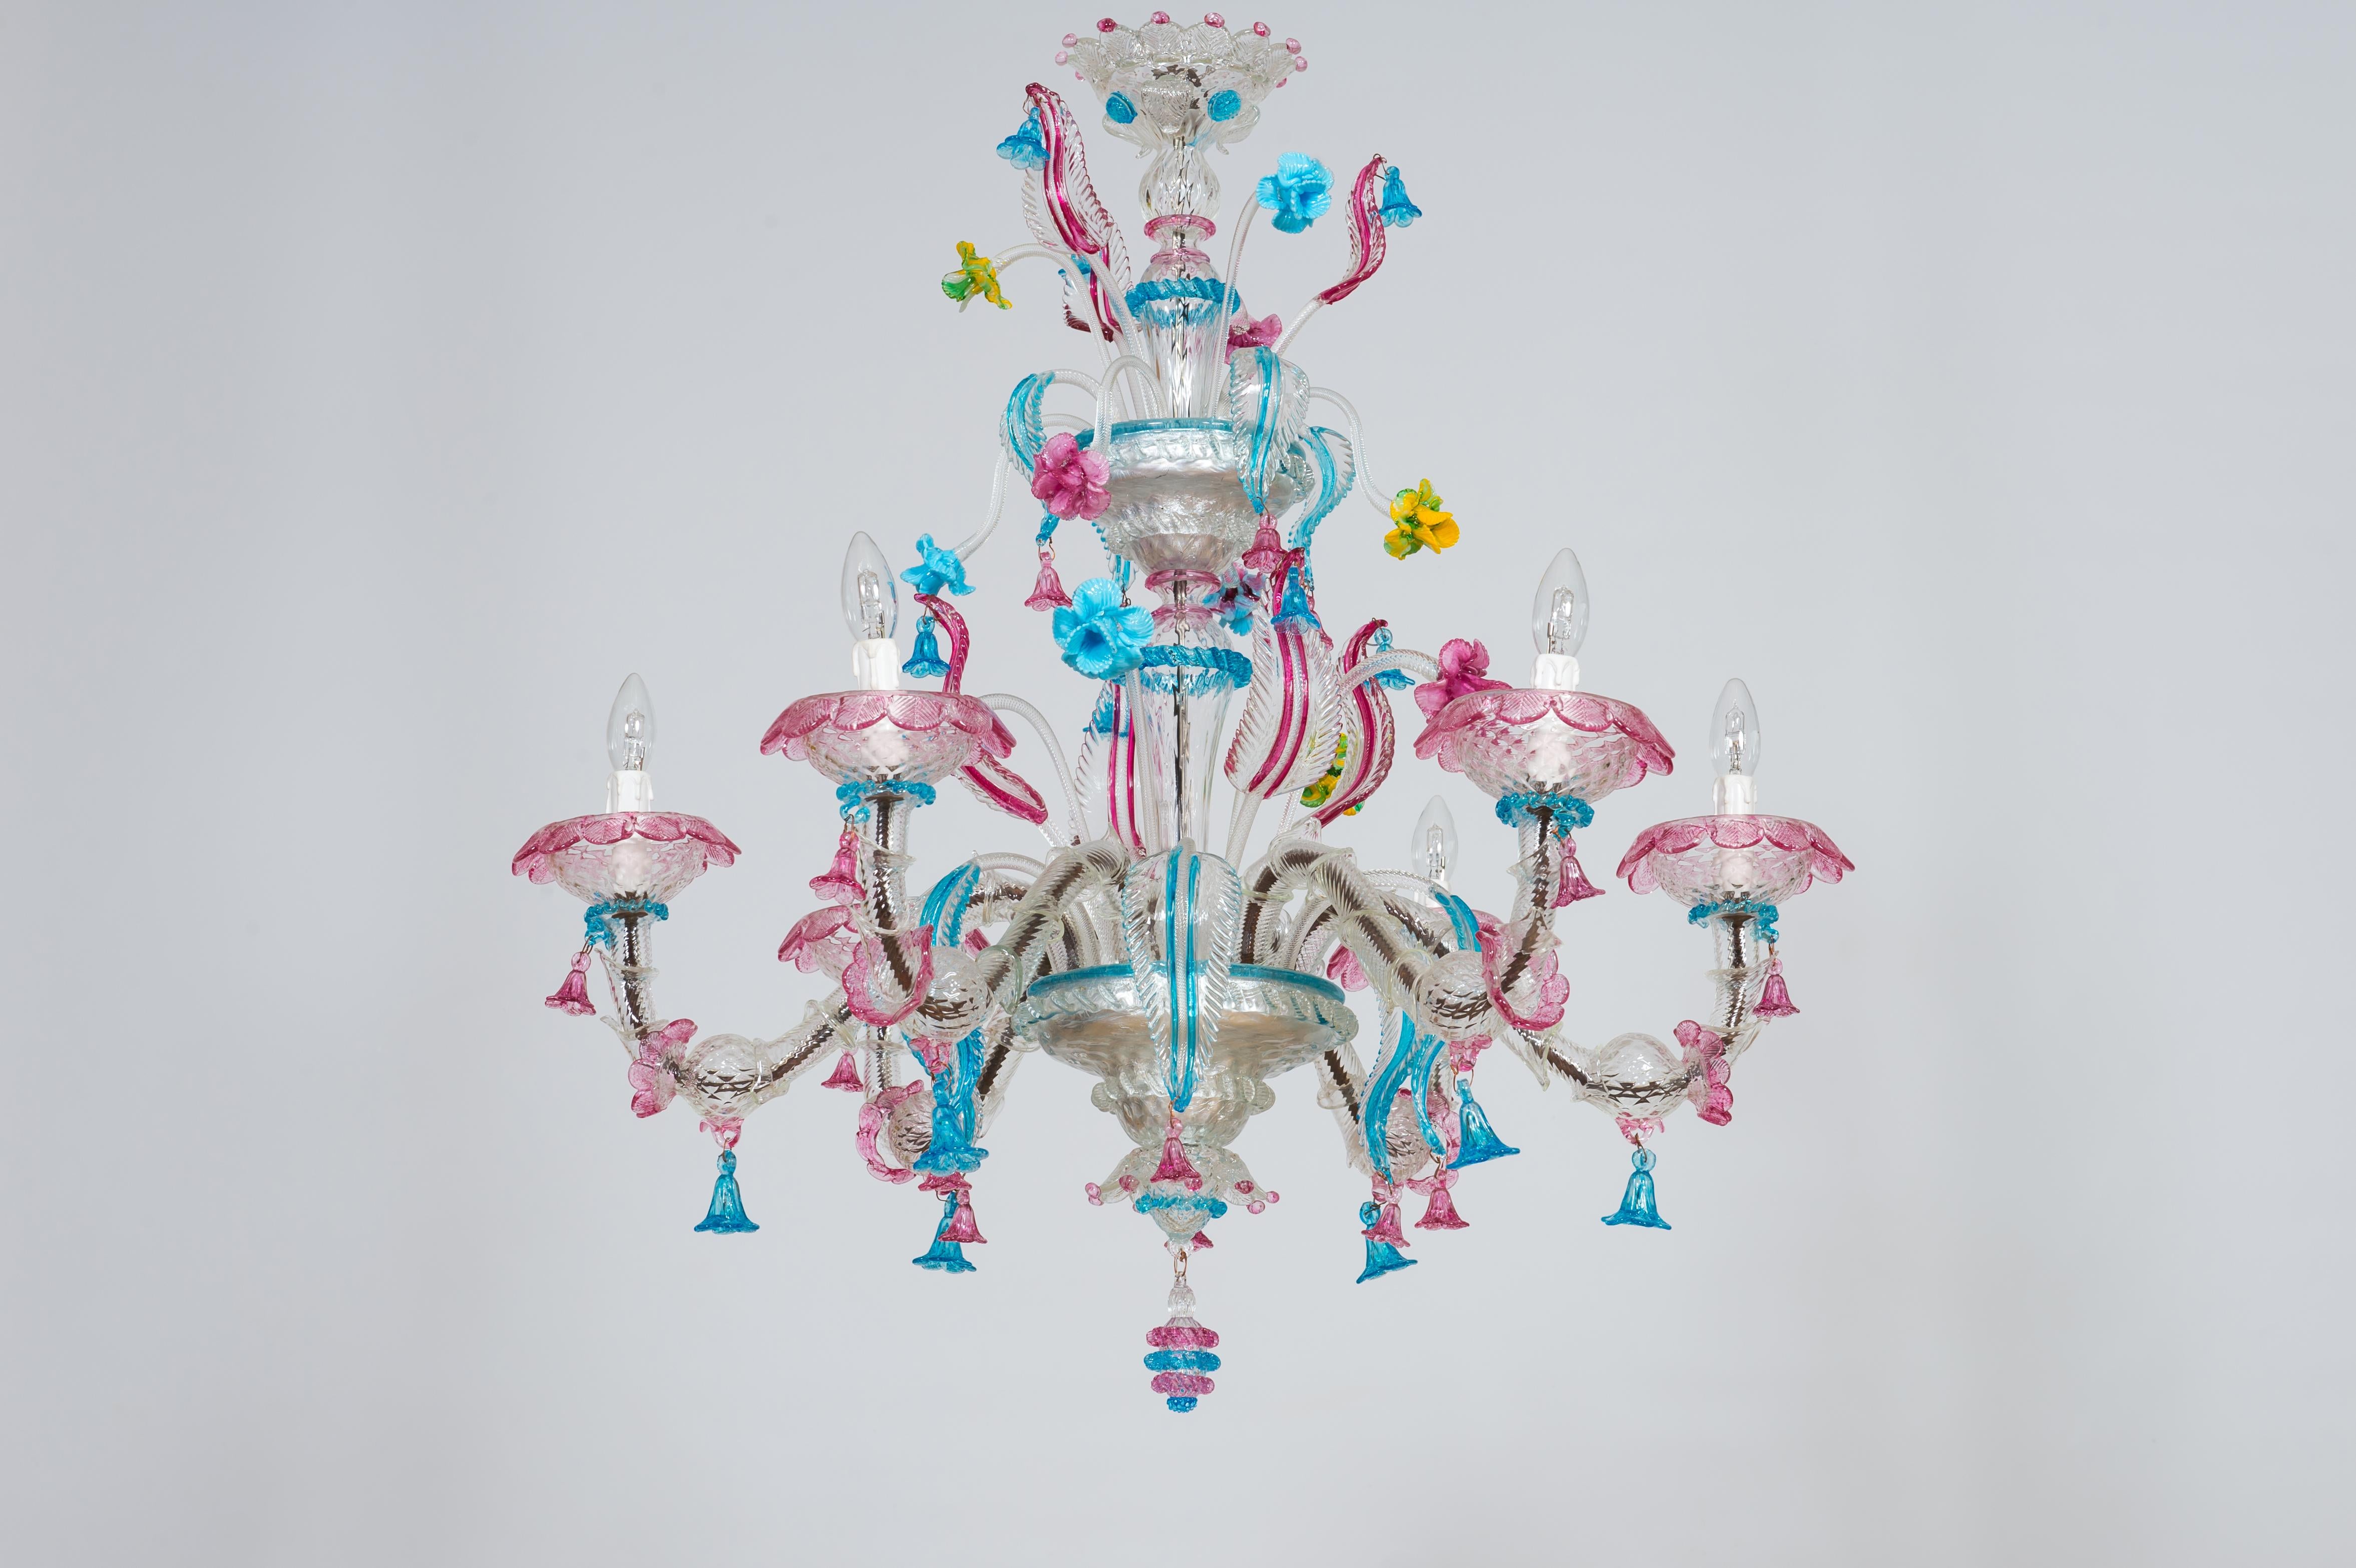 Rezzonico floraler Kronleuchter aus mehrfarbigem Murano-Glas der 2000er Jahre.
Dieser wunderschöne Kronleuchter ist ein einzigartiges Stück der raffiniertesten italienischen und venezianischen Glaskunst. Er besteht vollständig aus mundgeblasenem